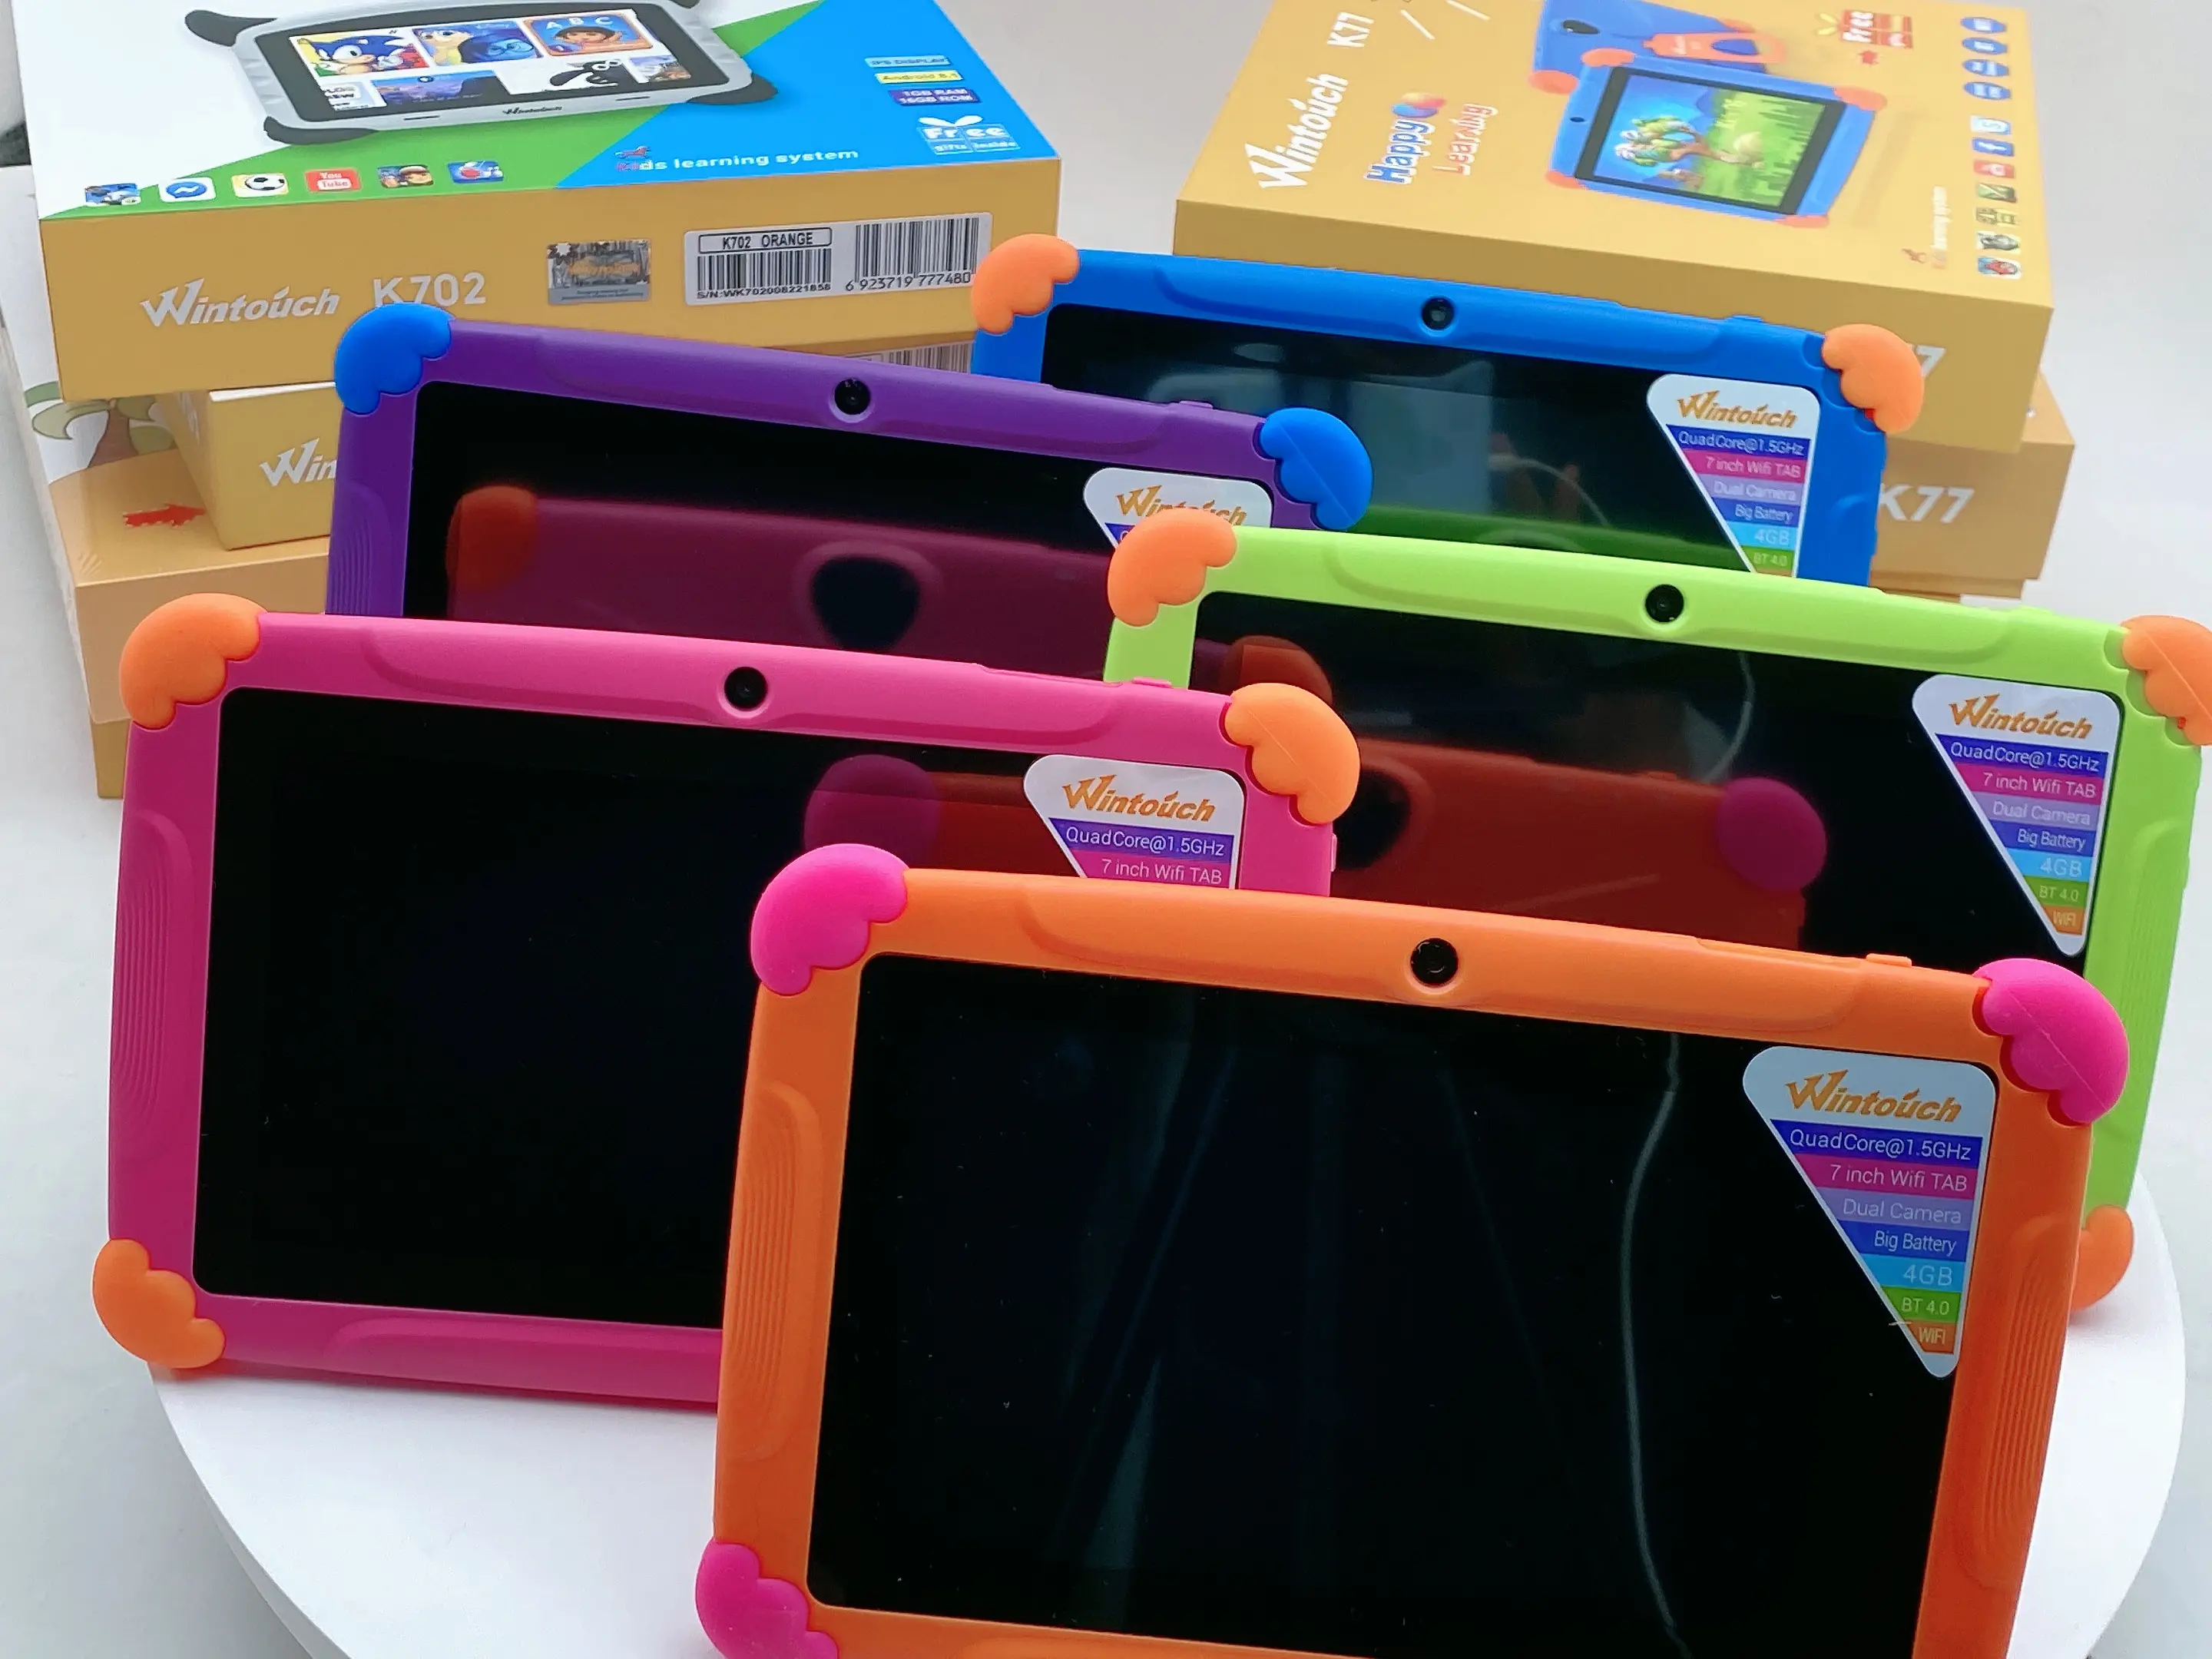 جهاز لوحي لتعليم الأطفال يعمل بنظام التشغيل Android سعة 8 جيجابايت وشاشة 7 بوصات جهاز لوحي لتعليم الأطفال